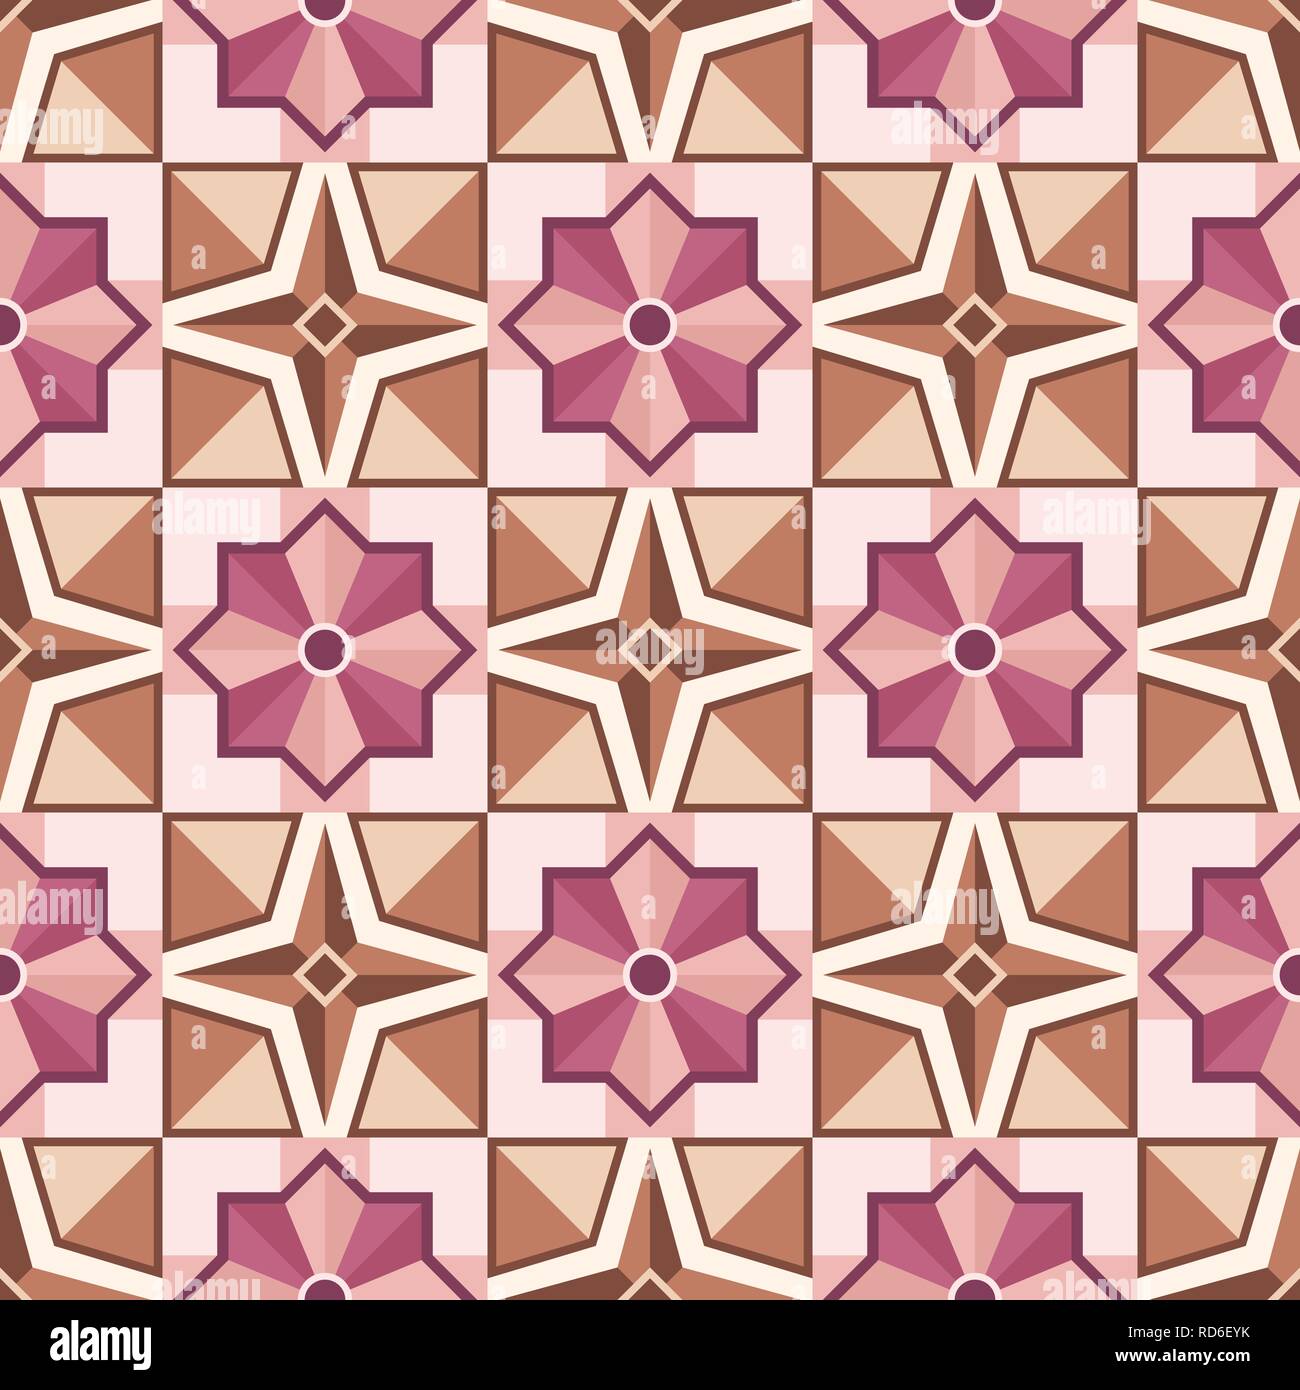 Abstrakte Mosaik Fliese Muster mit geometrischen Form der Dekoration. Vektor nahtlose Hintergrund. Fliesen- Drucken zum Einwickeln, Hintergrund oder Keramik. Stock Vektor